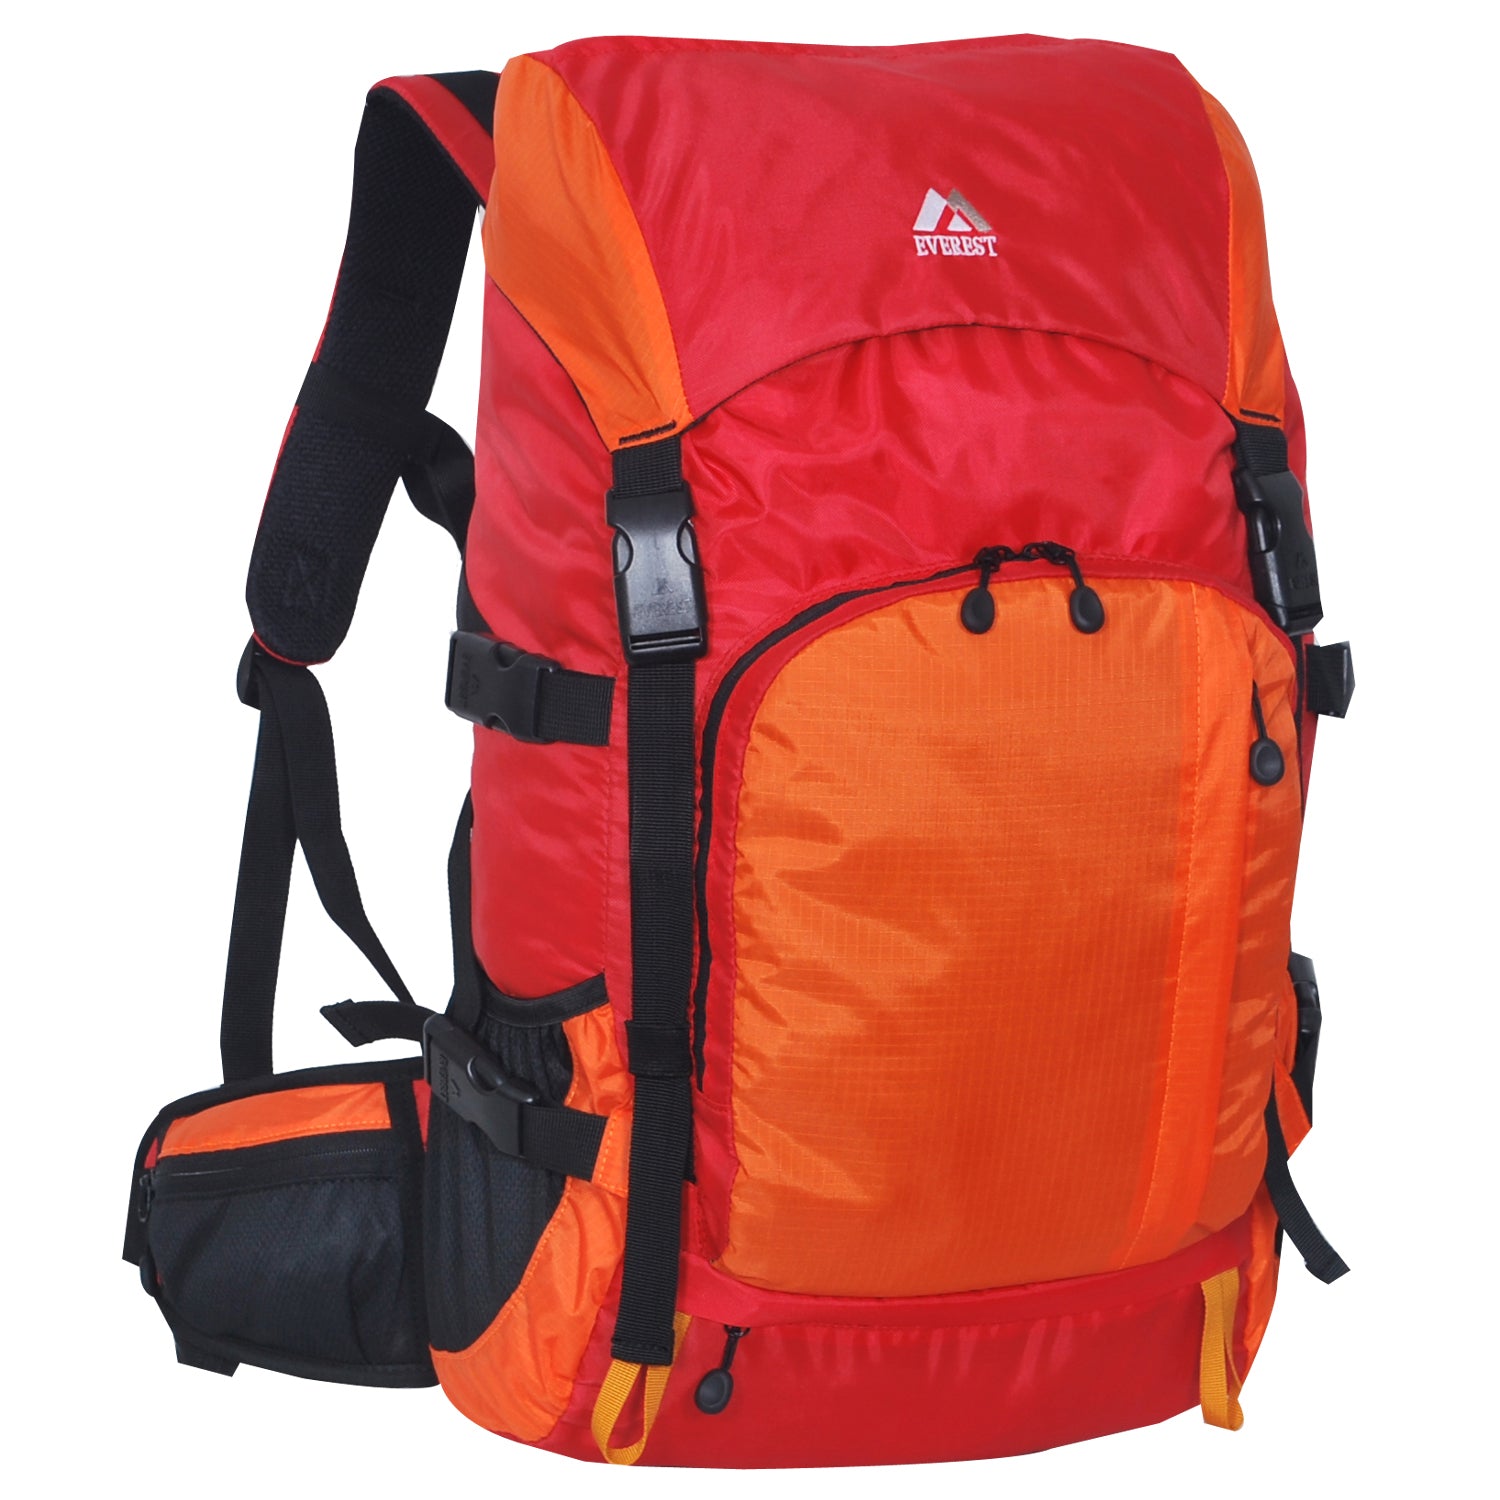 Everest-Weekender Hiking Pack